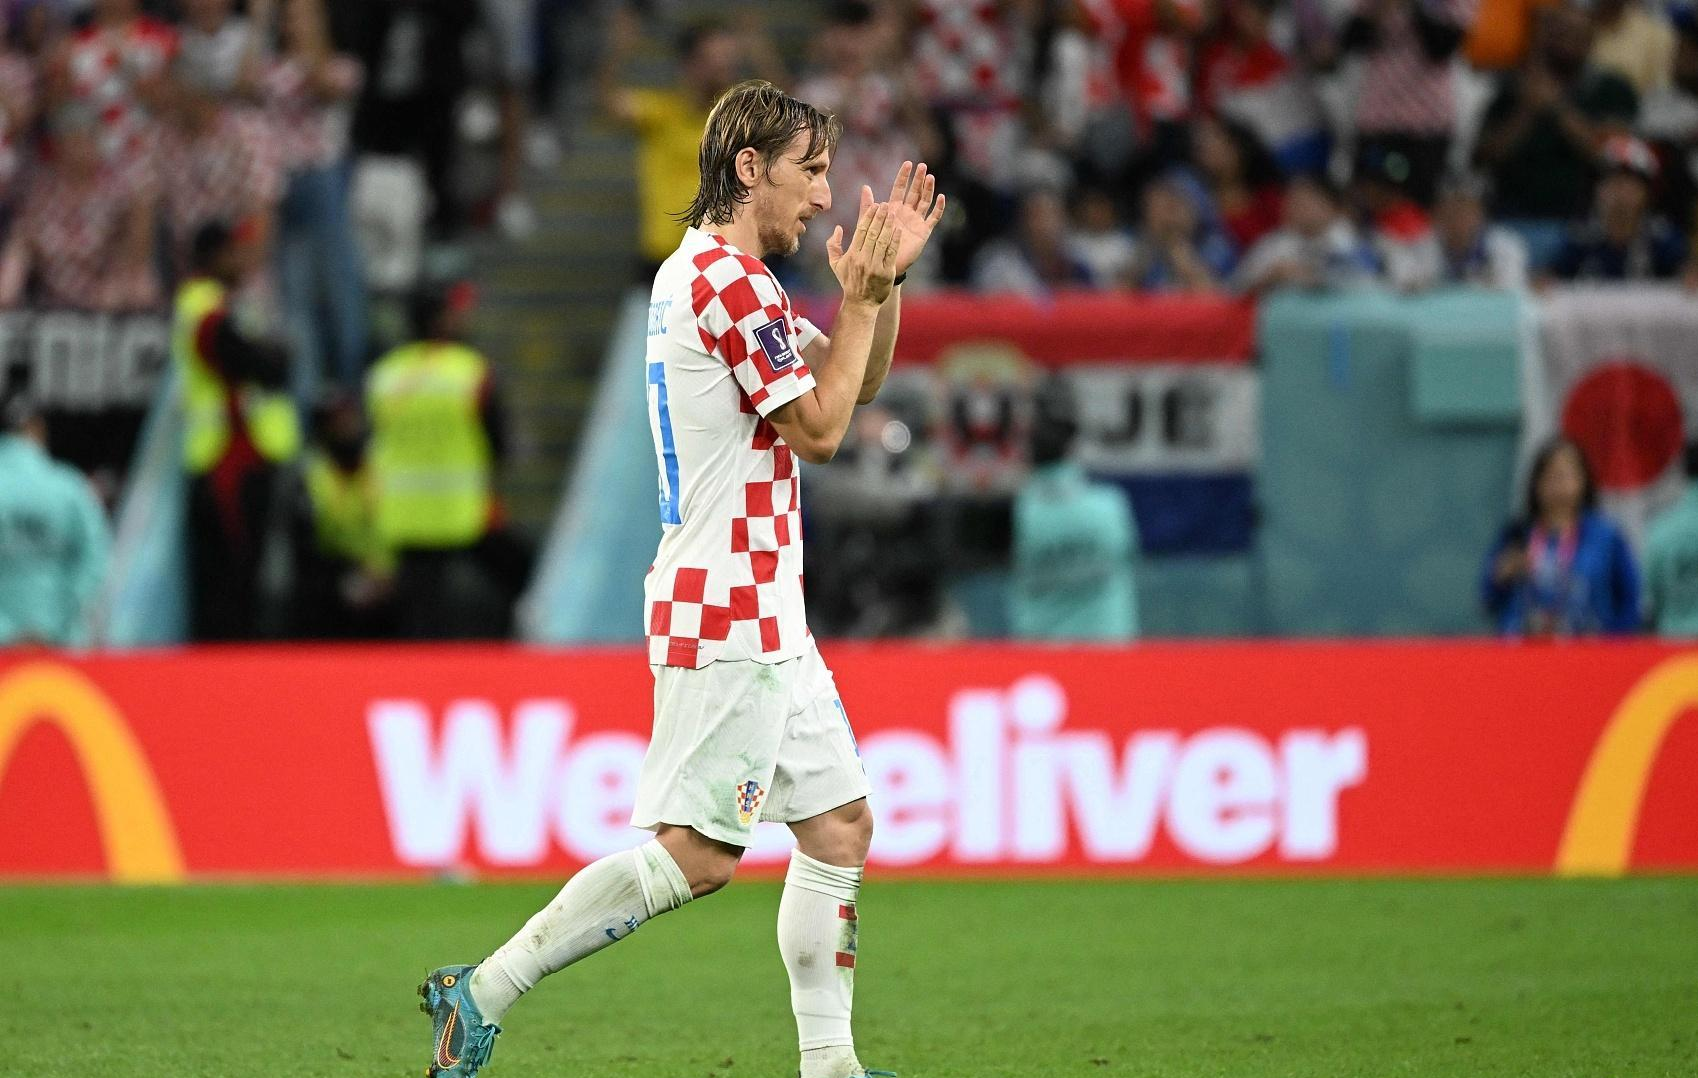 克罗地亚队能在世界杯屡创奇迹靠的是严格的纪律